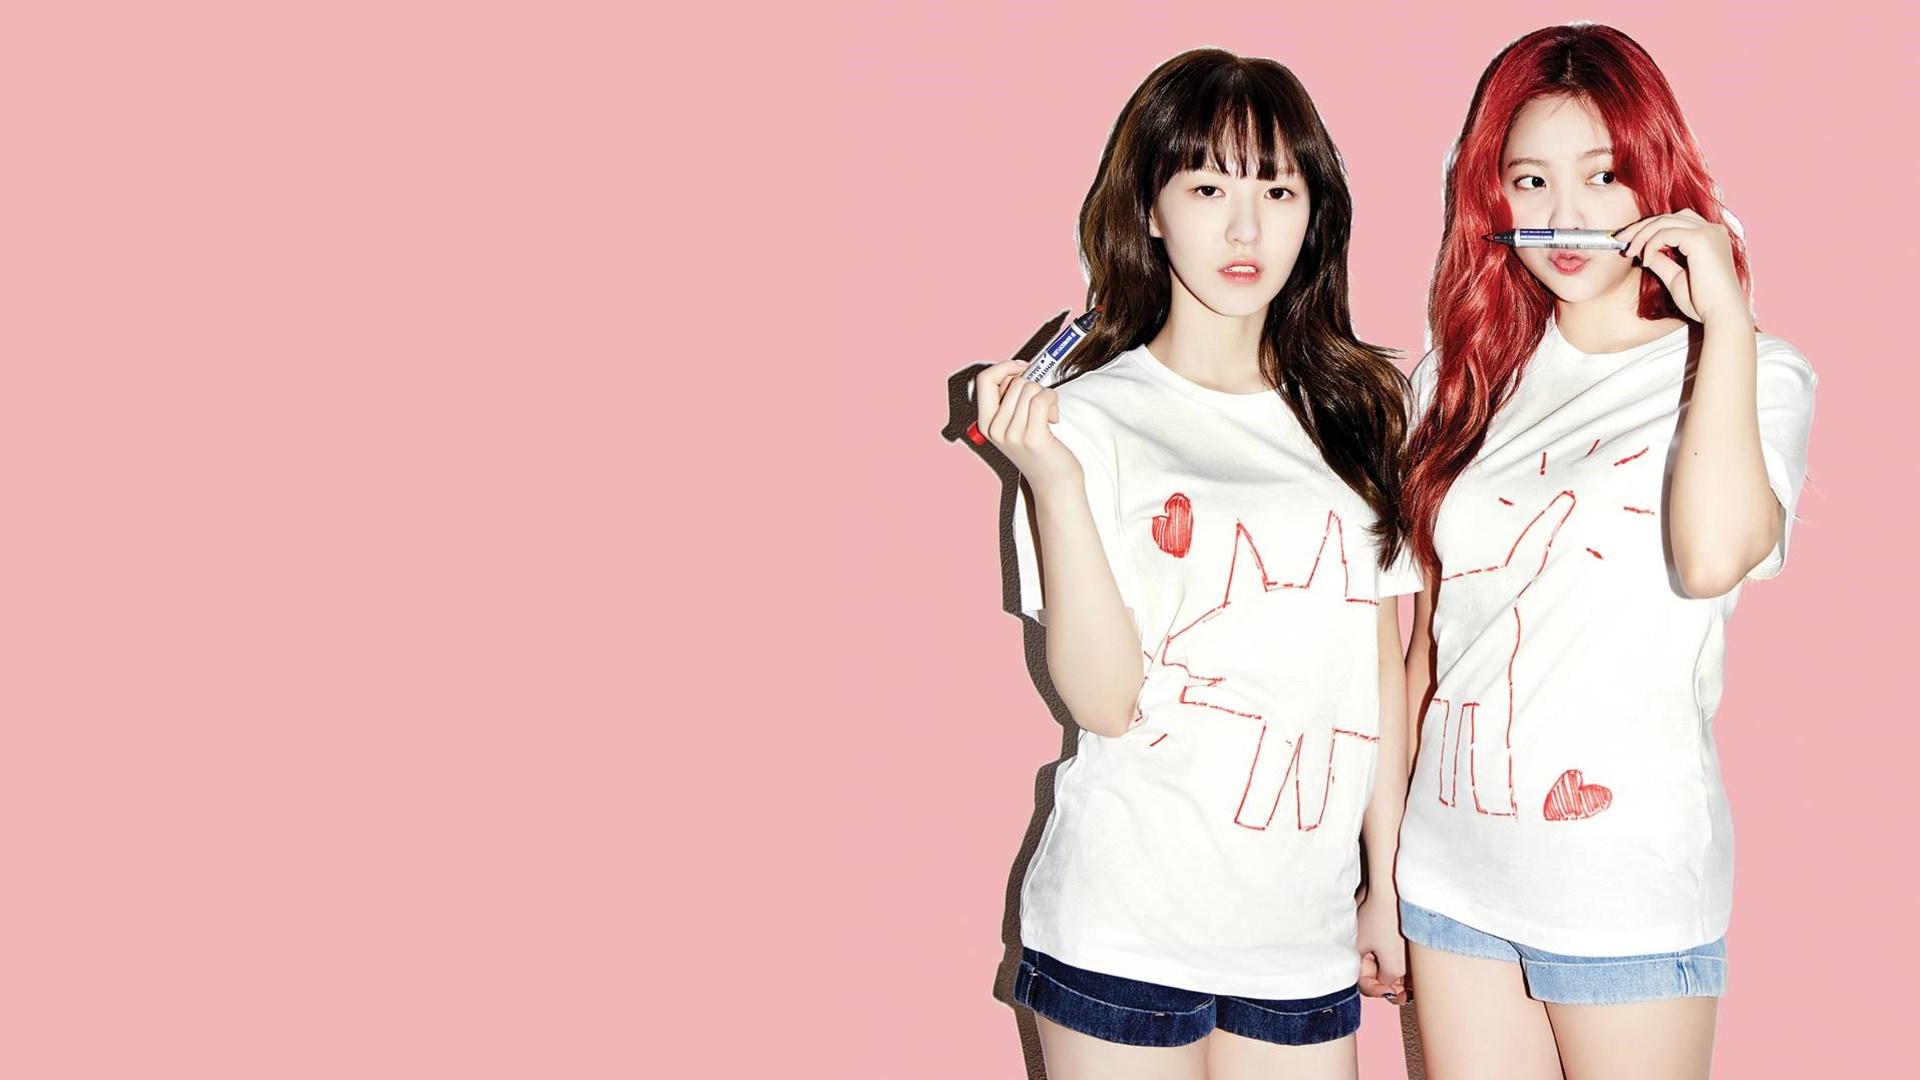 Wendy and Yeri Red Velvet Girls Wallpaper